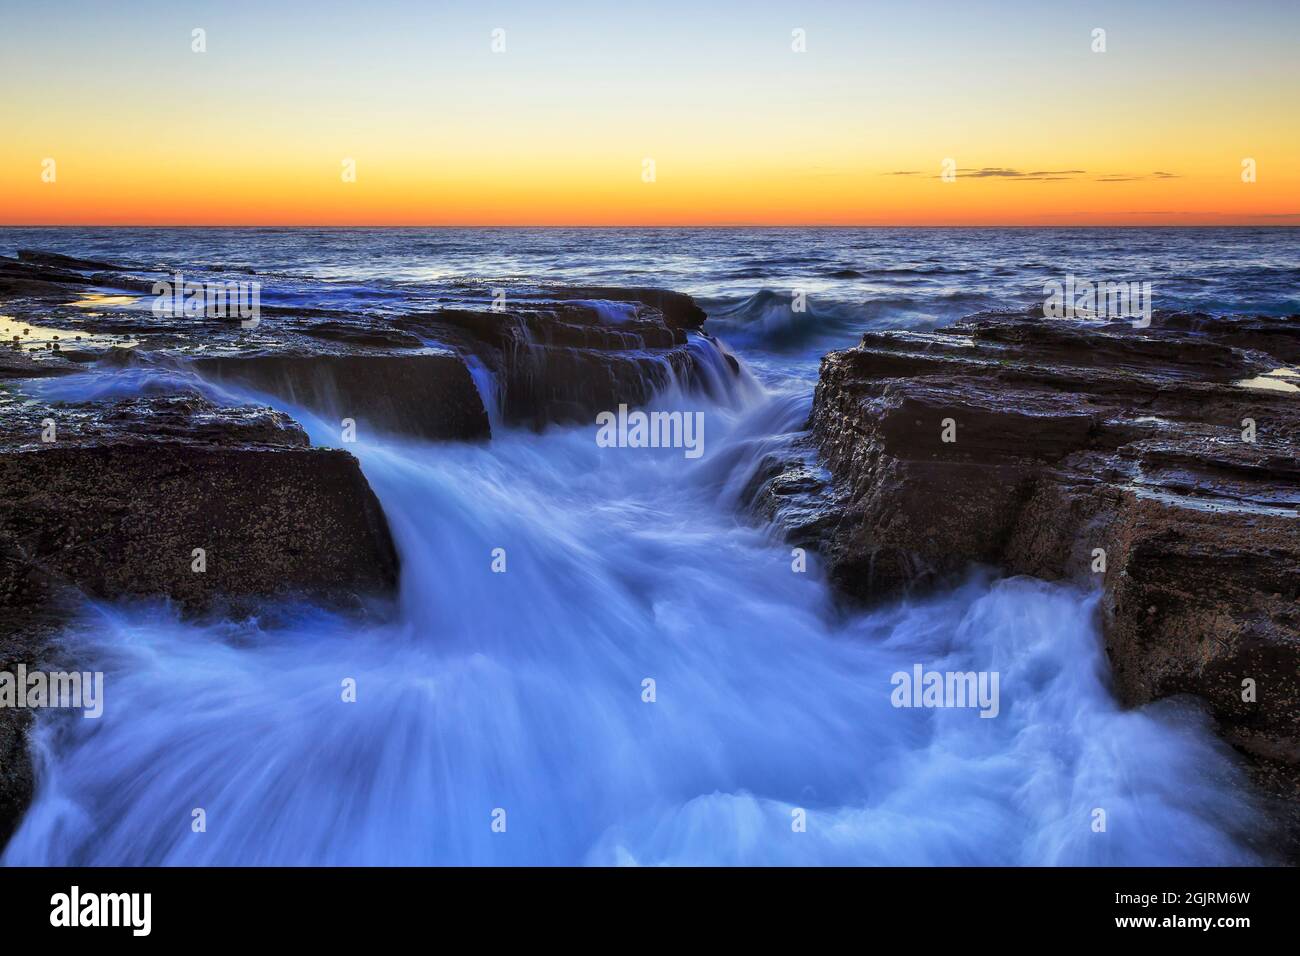 Tranchée robuste dans des rochers de grès sur les plages du nord de Sydney sur la côte de l'océan Pacifique au lever du soleil dans un paysage marin pittoresque. Banque D'Images